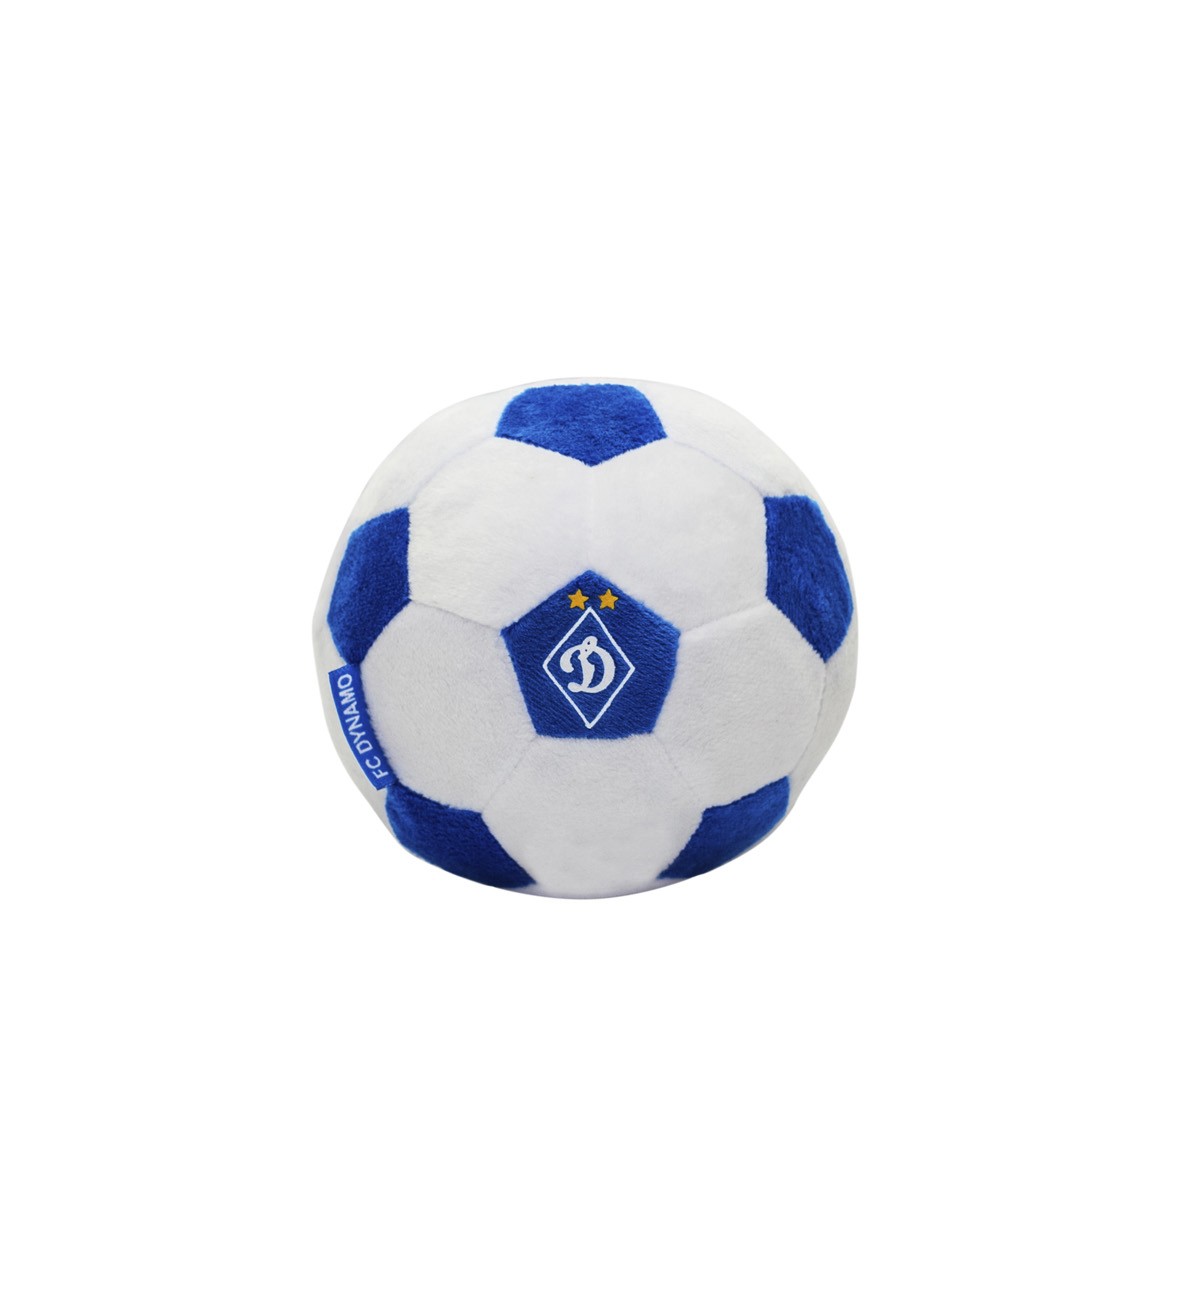 Toy ball "Dynamo" (Kyiv)